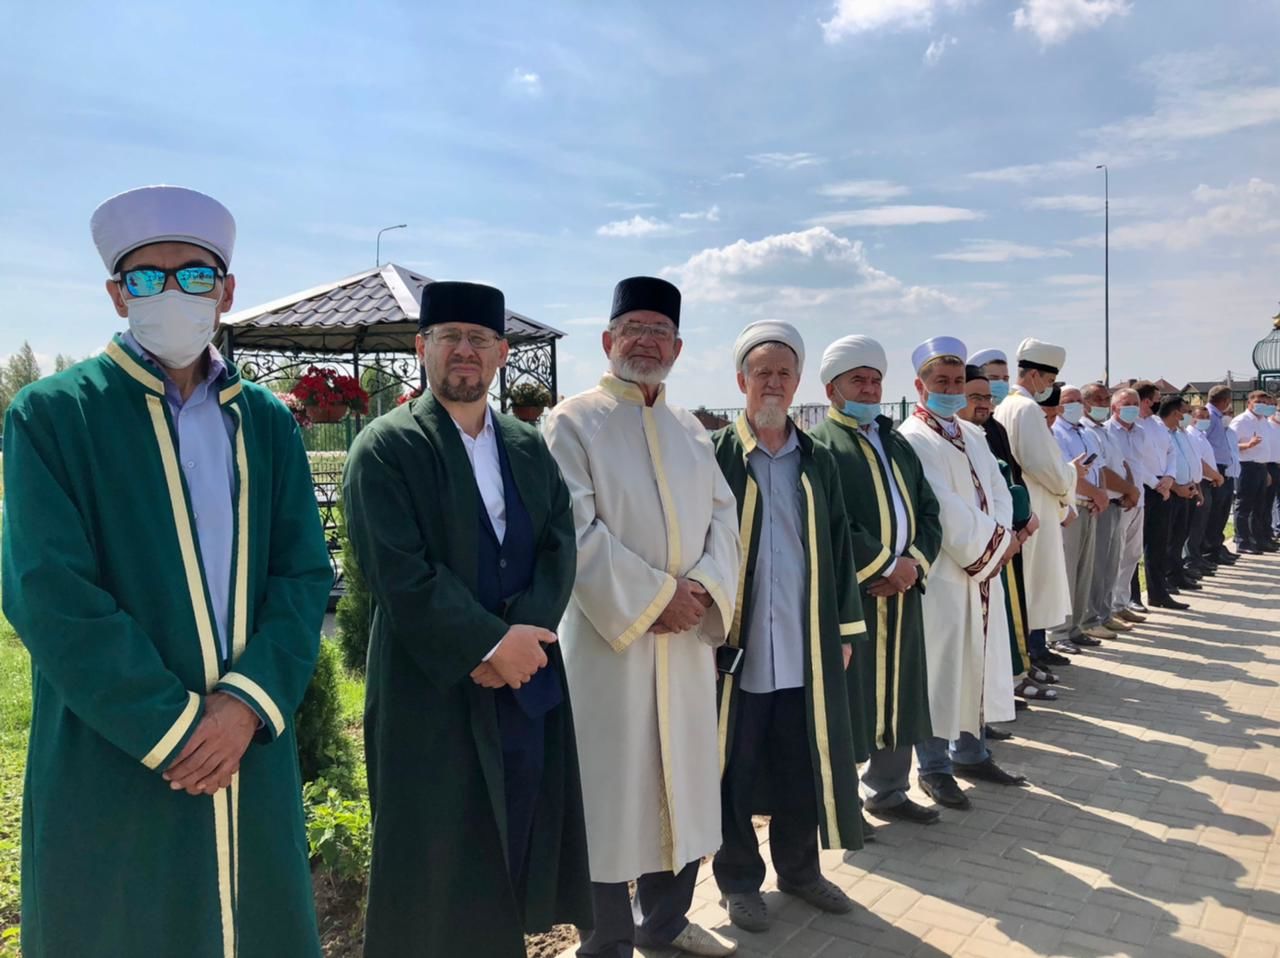 В Высокогорском районе сегодня Президент Республики Татарстан торжественно открыл исламский центр «Бердэмлек»